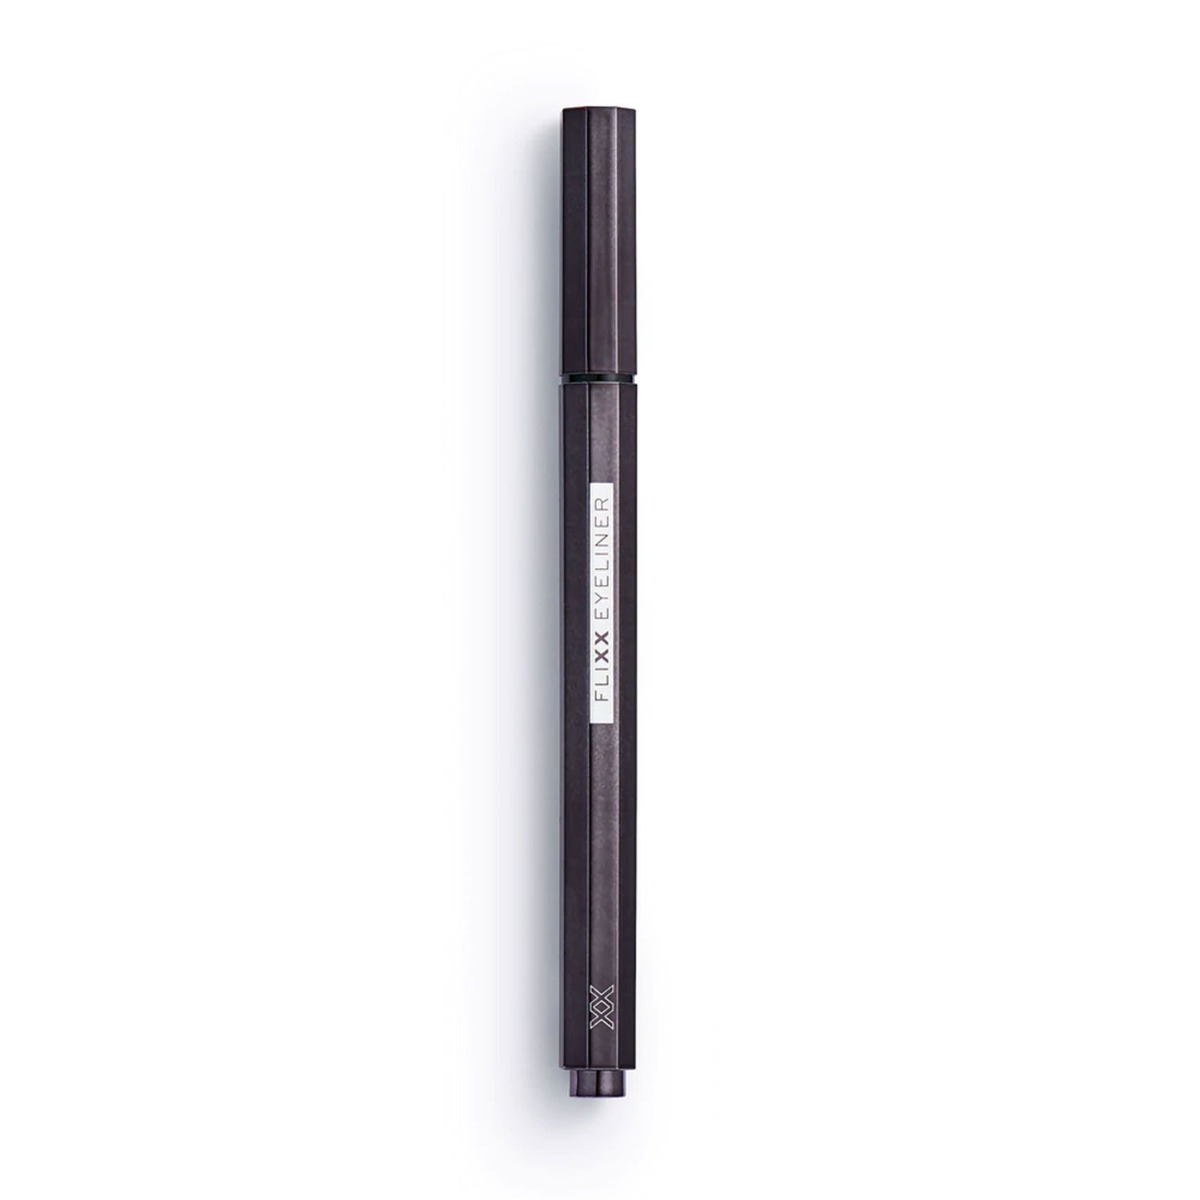 XX Revolution Flixx Eyeliner Pen Black, 0.4ml